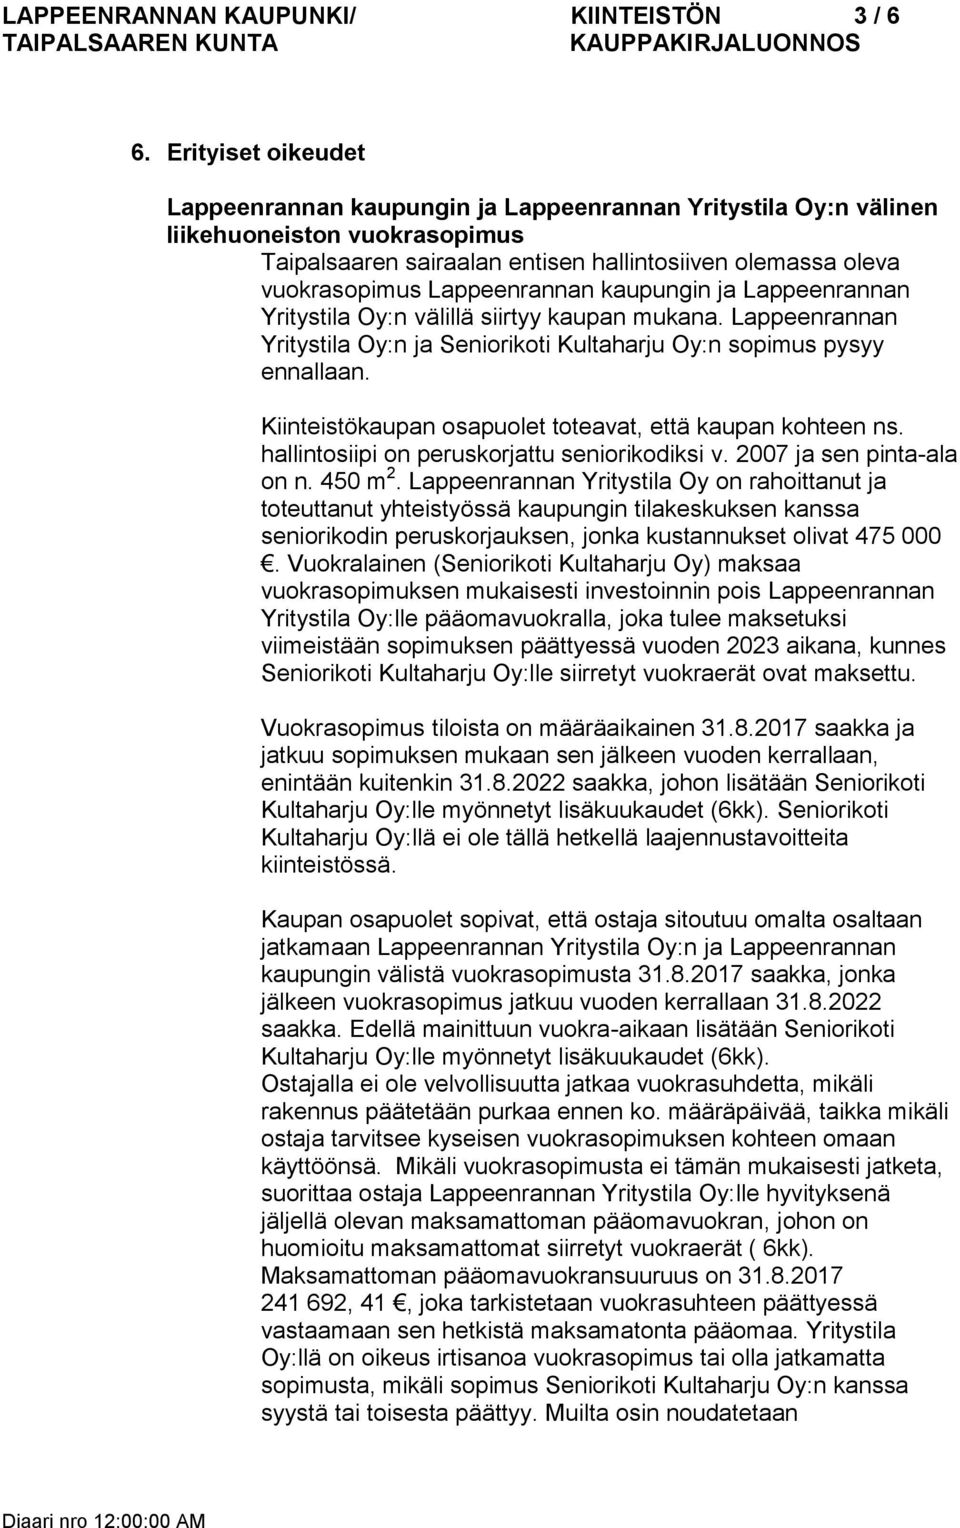 Lappeenrannan kaupungin ja Lappeenrannan Yritystila Oy:n välillä siirtyy kaupan mukana. Lappeenrannan Yritystila Oy:n ja Seniorikoti Kultaharju Oy:n sopimus pysyy ennallaan.